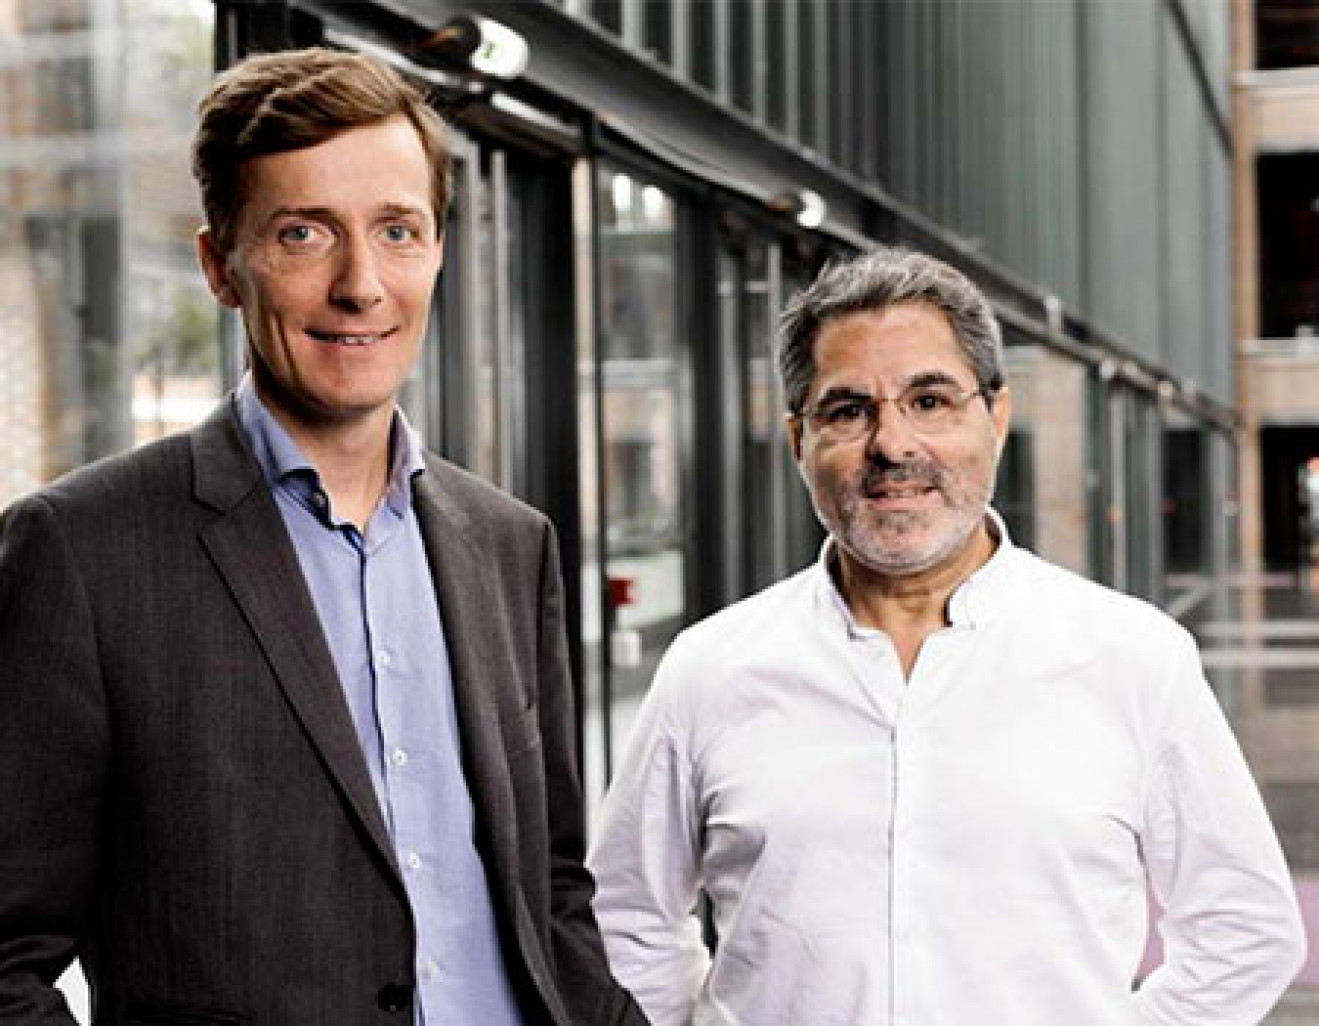 Les fondateurs de Citymagine, Matthieu Levivier et José Costa.